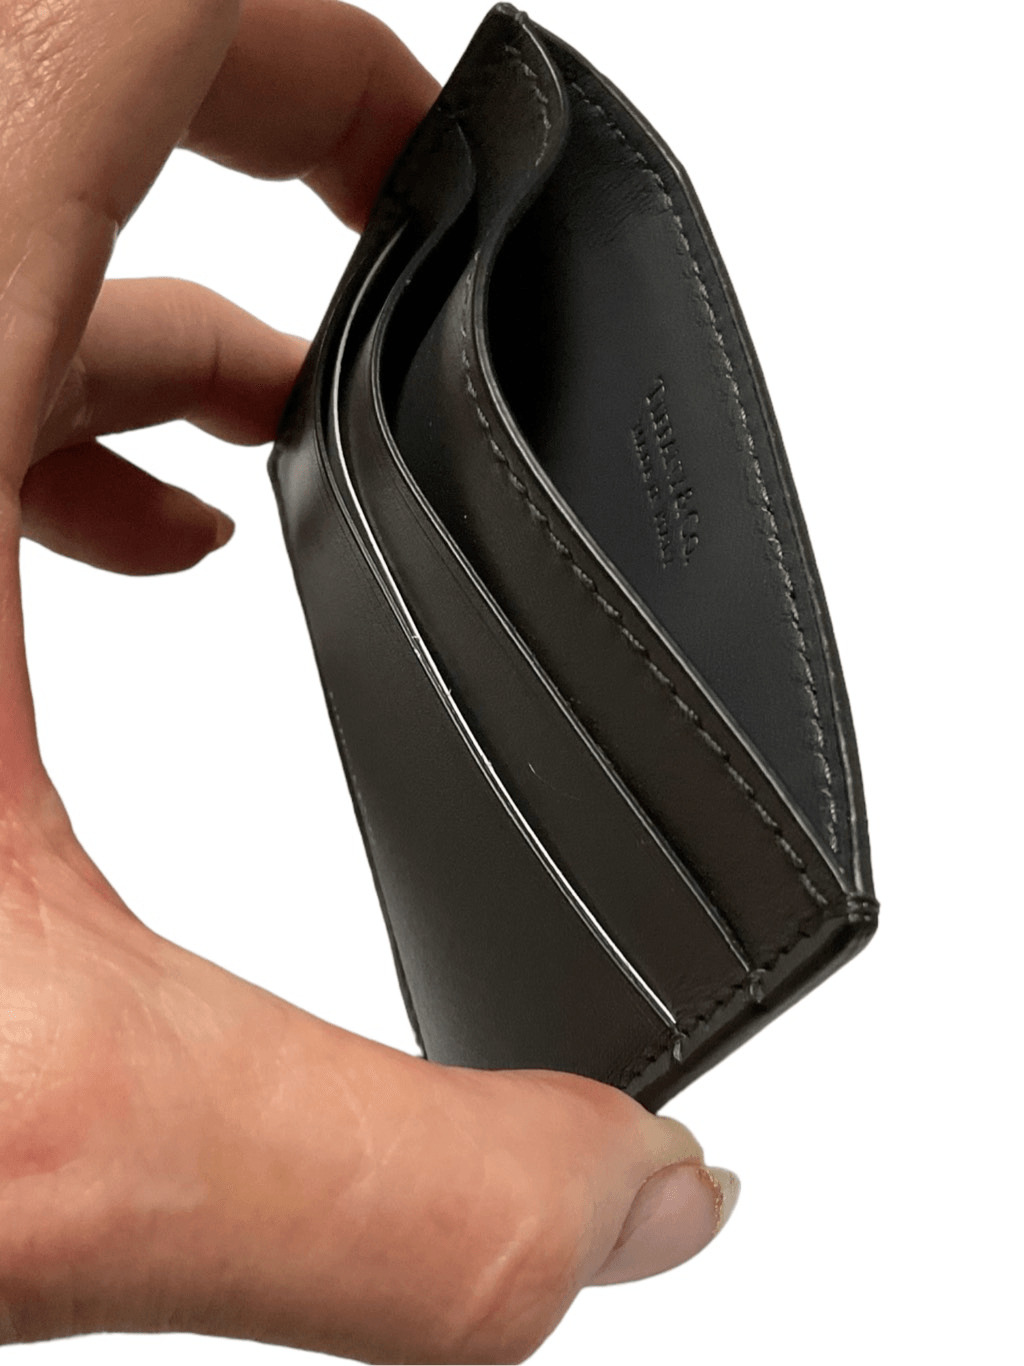 Tiffany & Co. Unisex Black Leather Cardholder - image 3